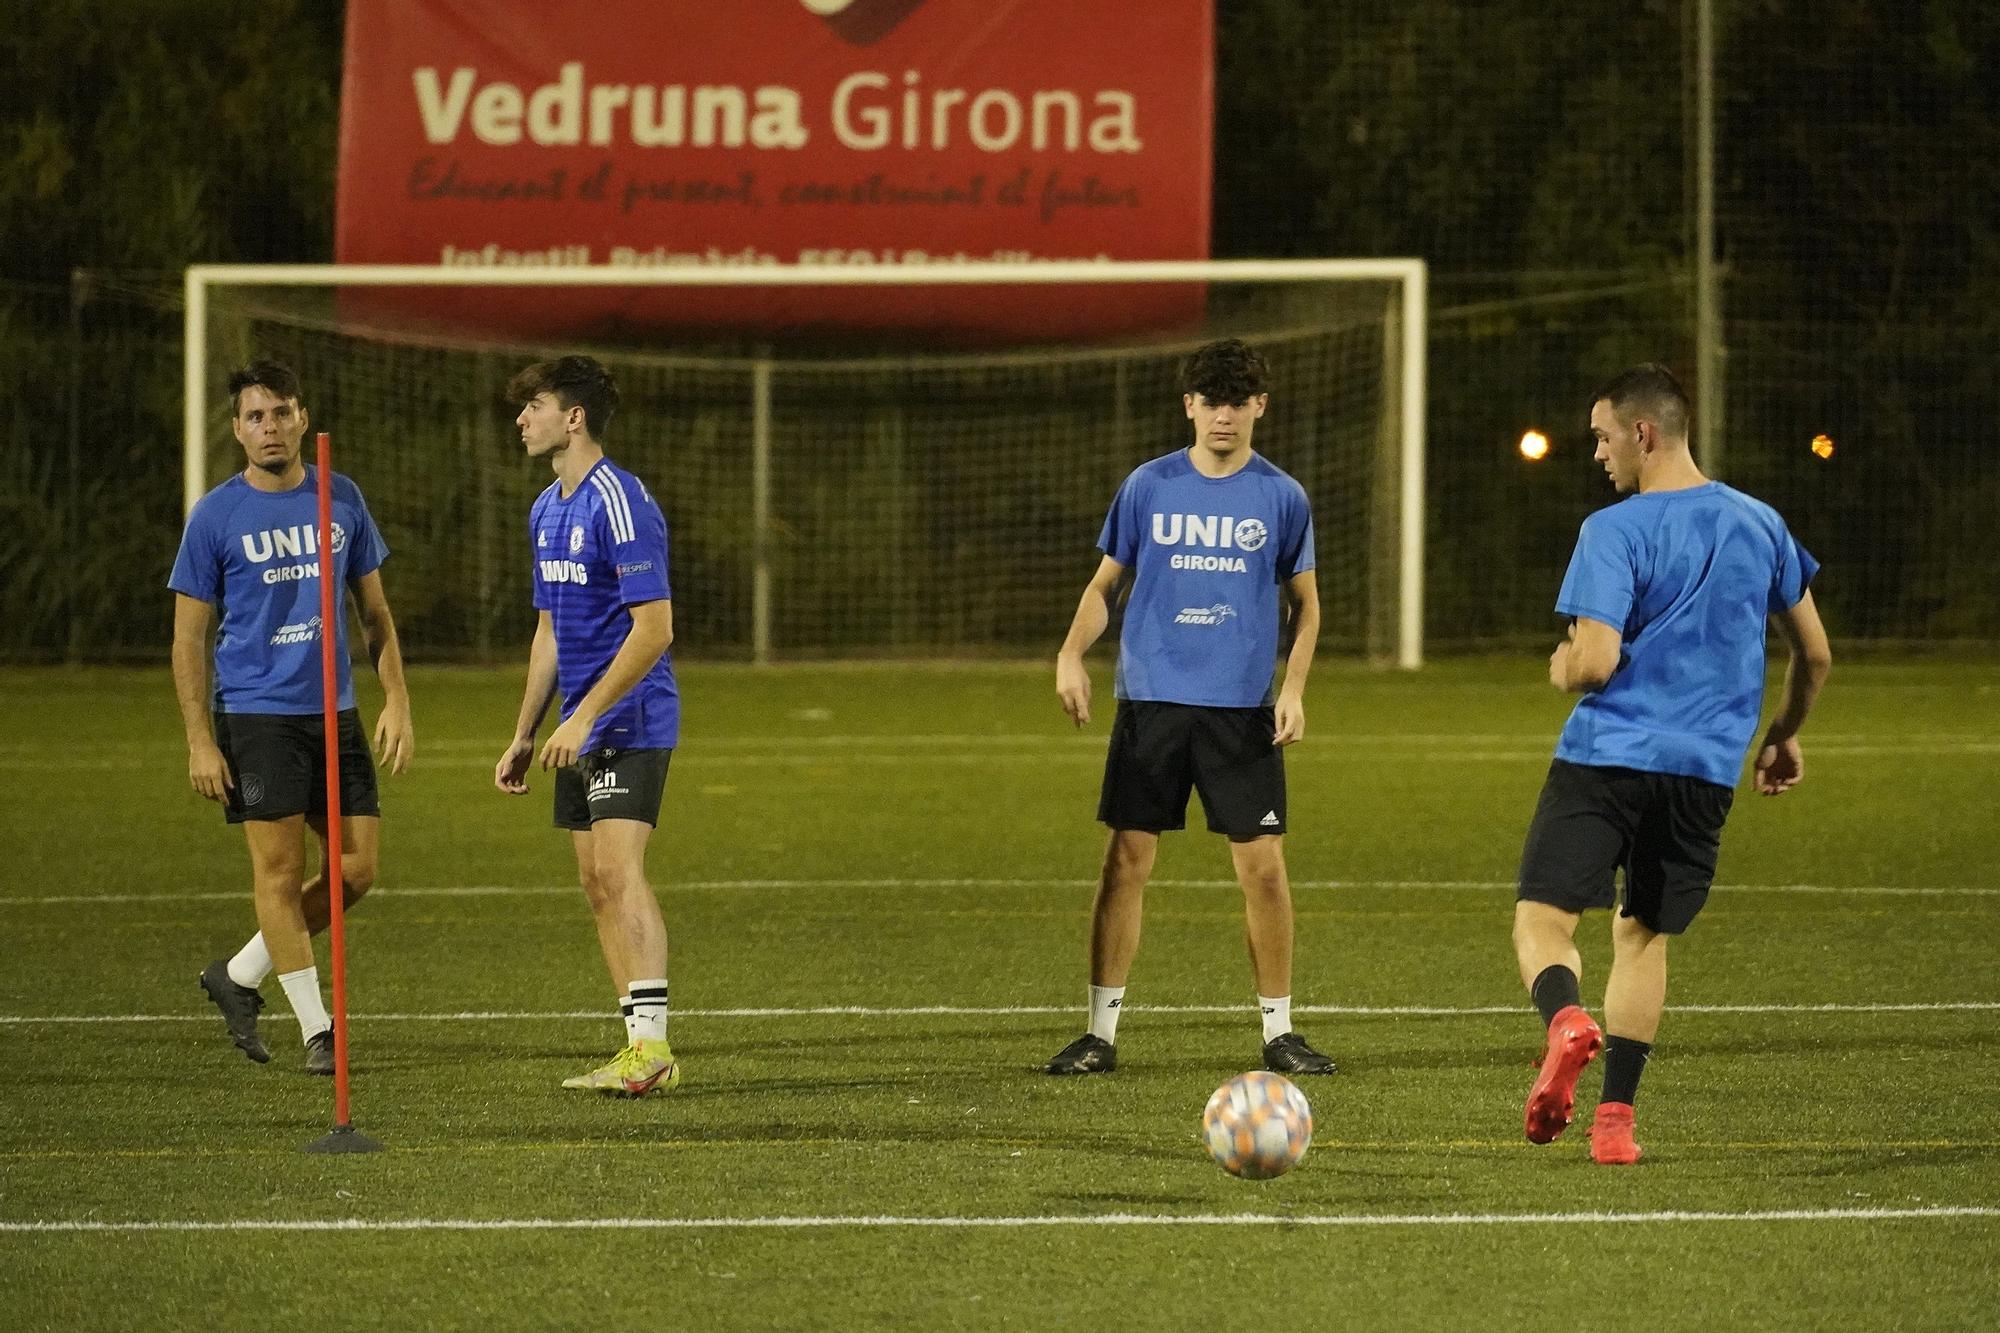 Unió Girona entrenant a l'escola Vedruna